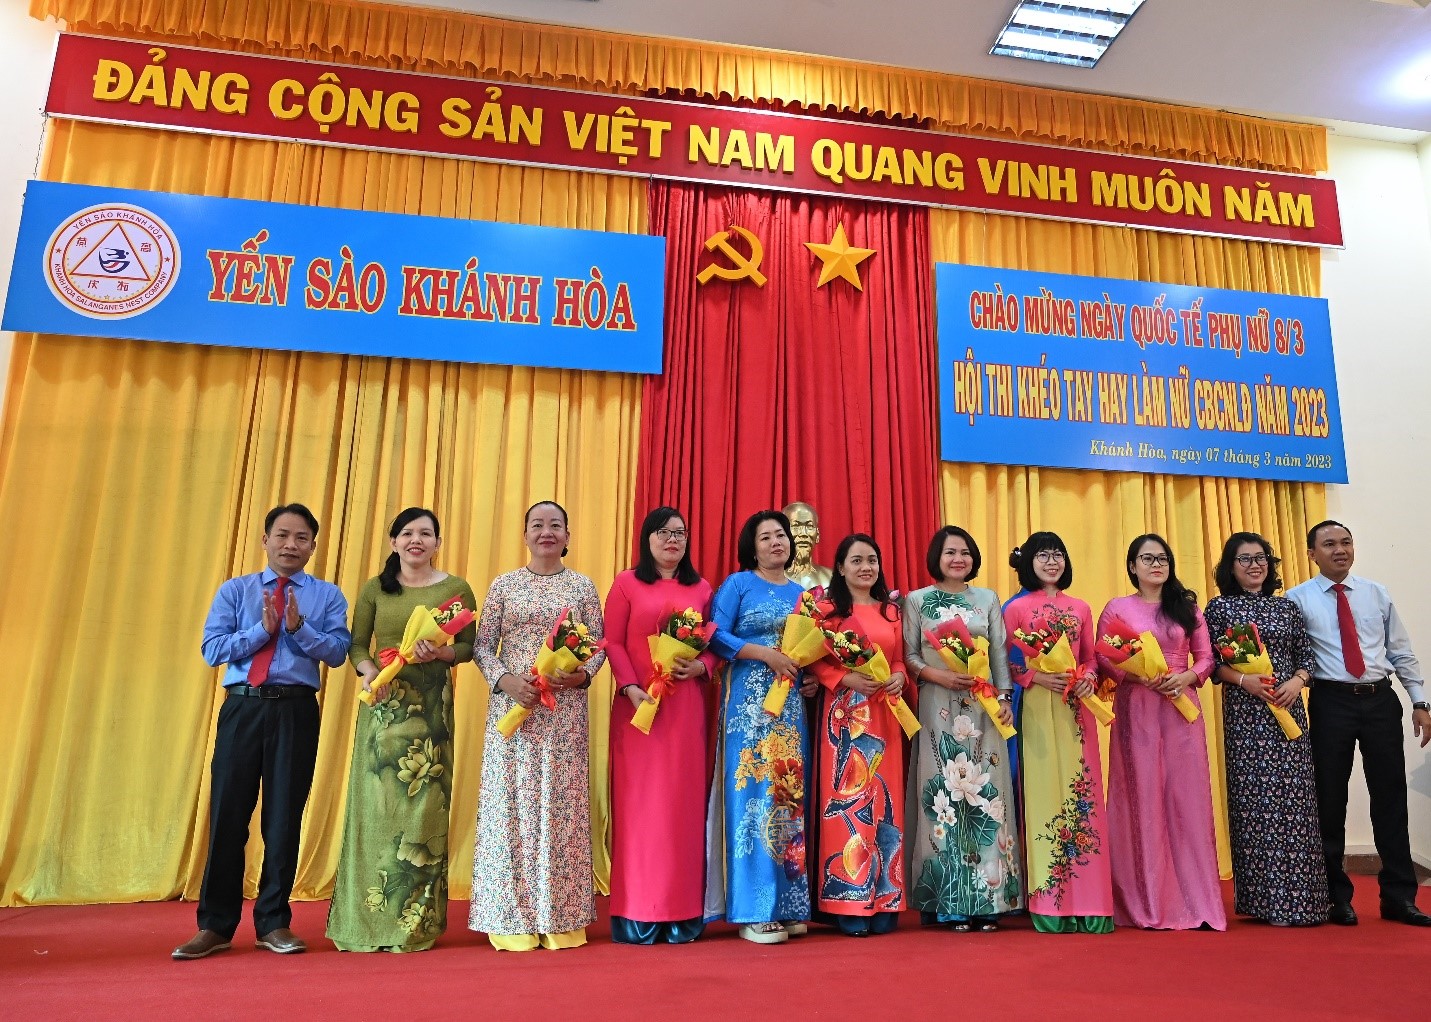 CB Nữ Trưởng phó phòng Công Ty Yến Sào Khánh Hòa nhận hoa tặng từ Công Ty Yến Sào Khánh Hòa